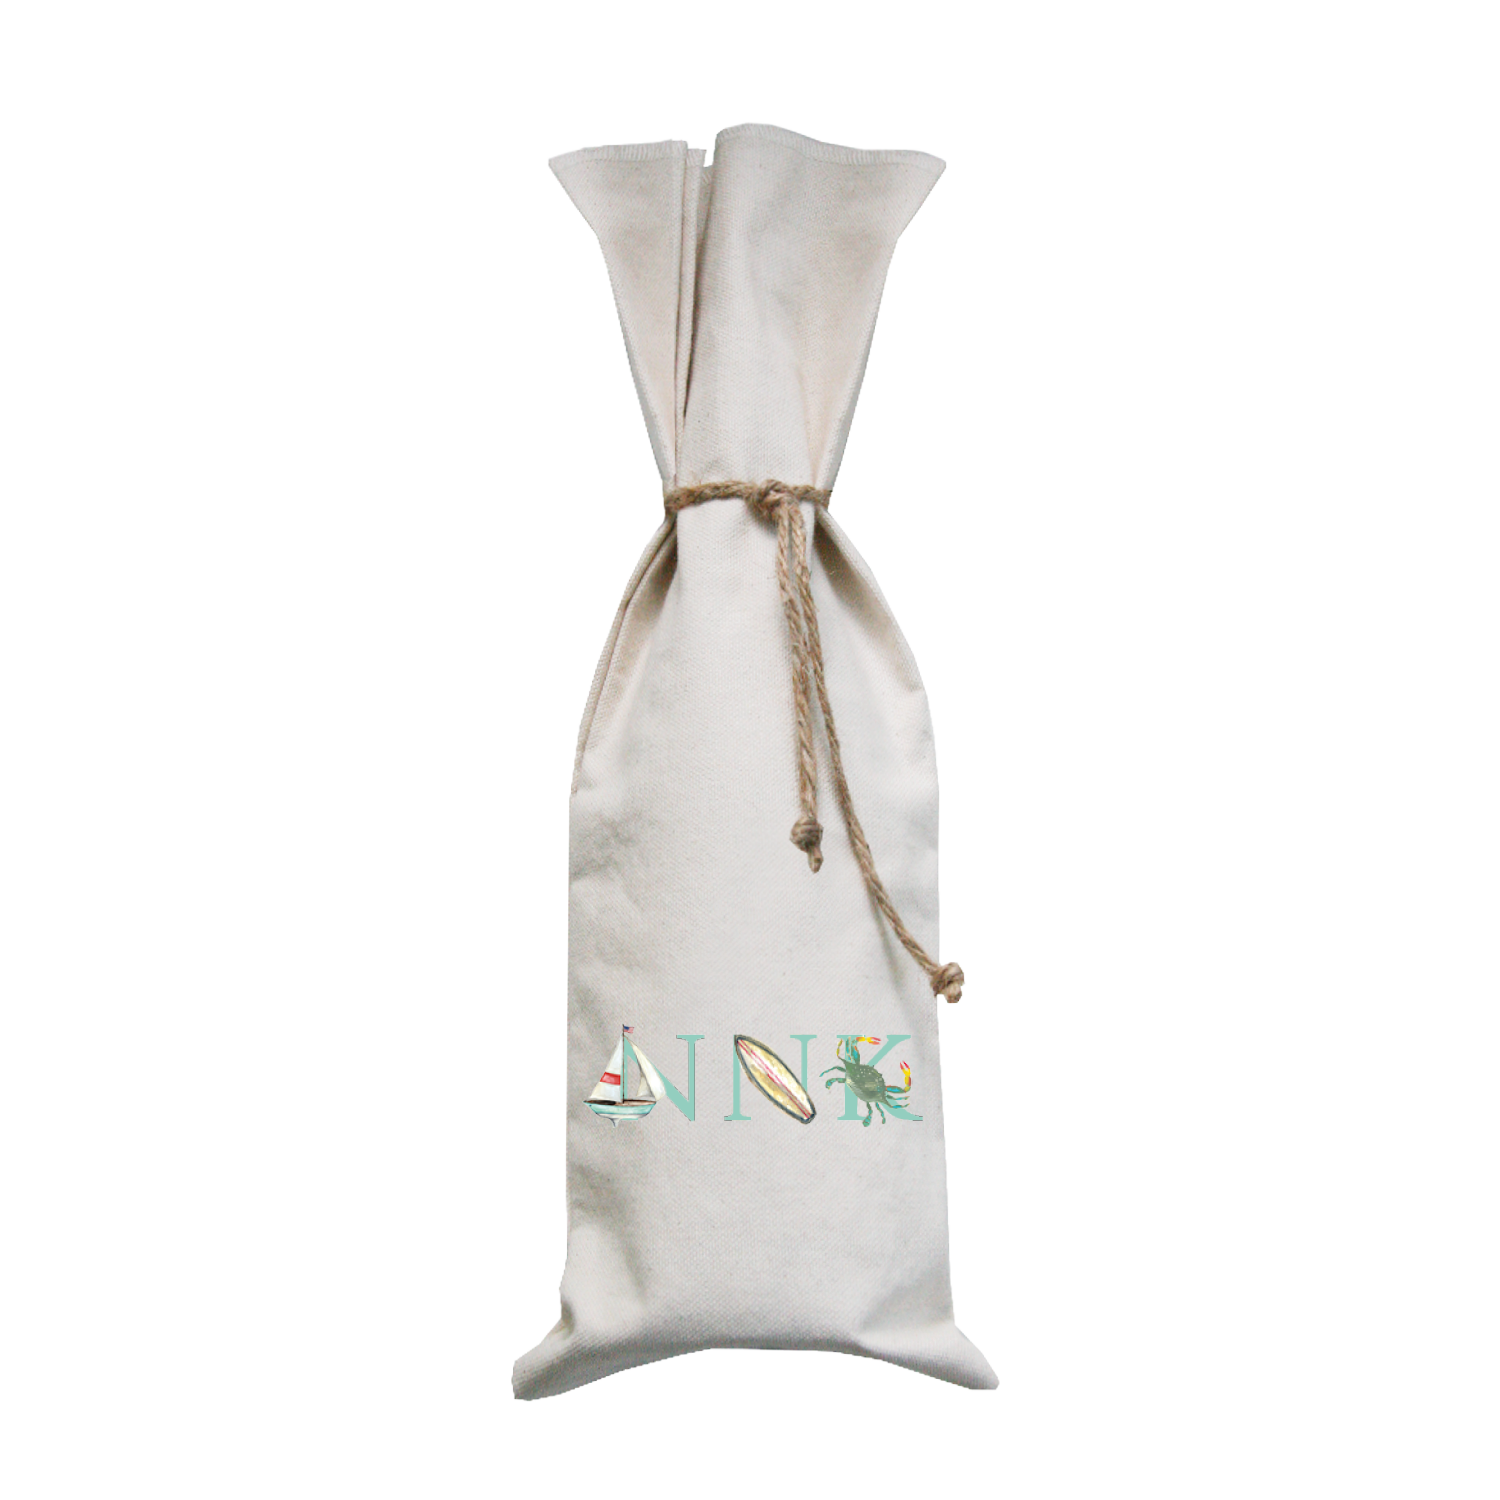 NNK aqua wine bag